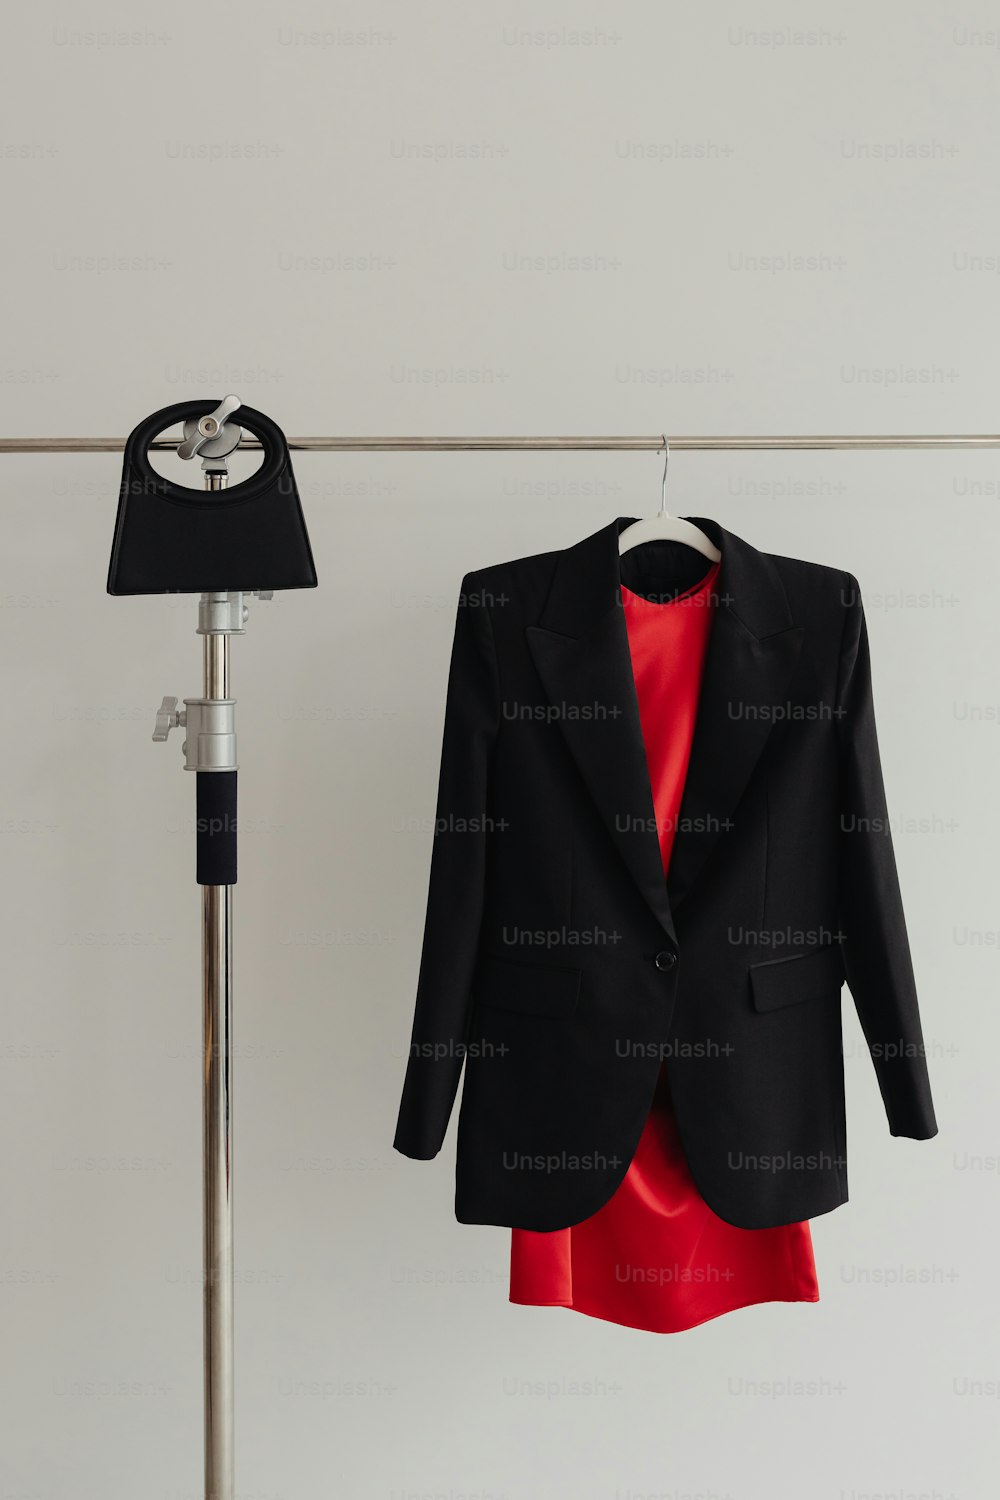 Una giacca nera appesa a una linea di vestiti accanto a un vestito rosso